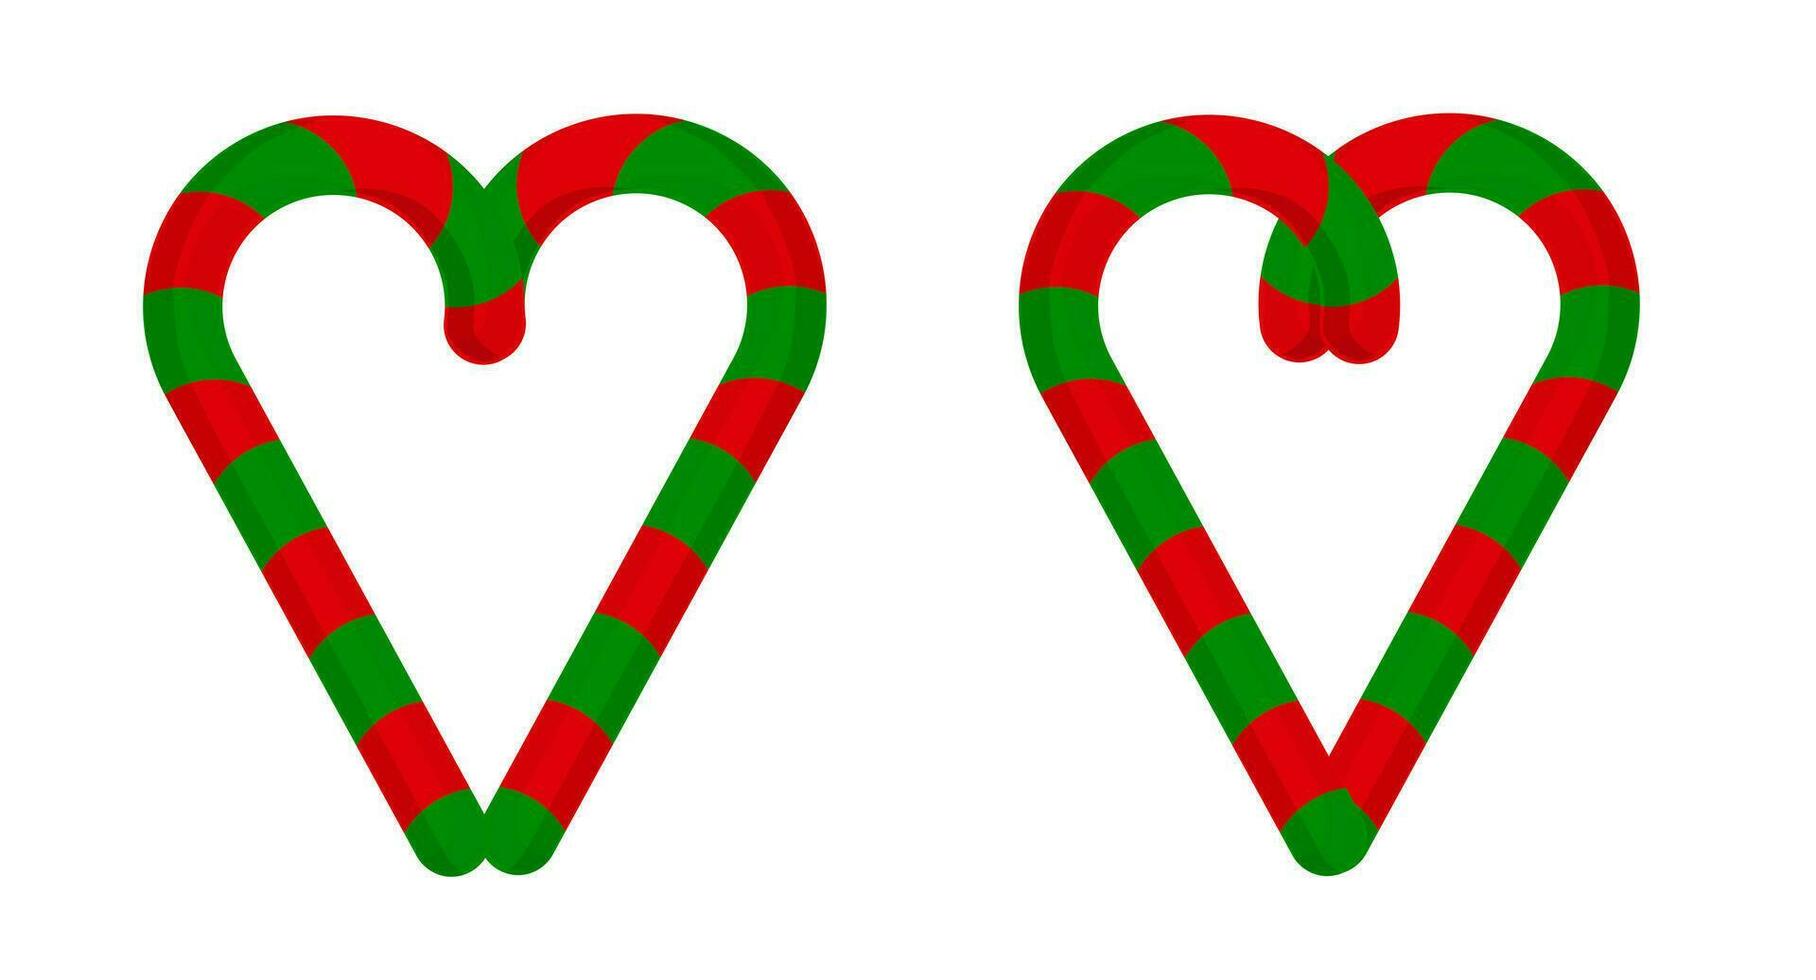 Navidad golosinas con verde y rojo a rayas. mano dibujado golosinas caña corazón. nuevo año fiesta elemento.vector ilustración vector